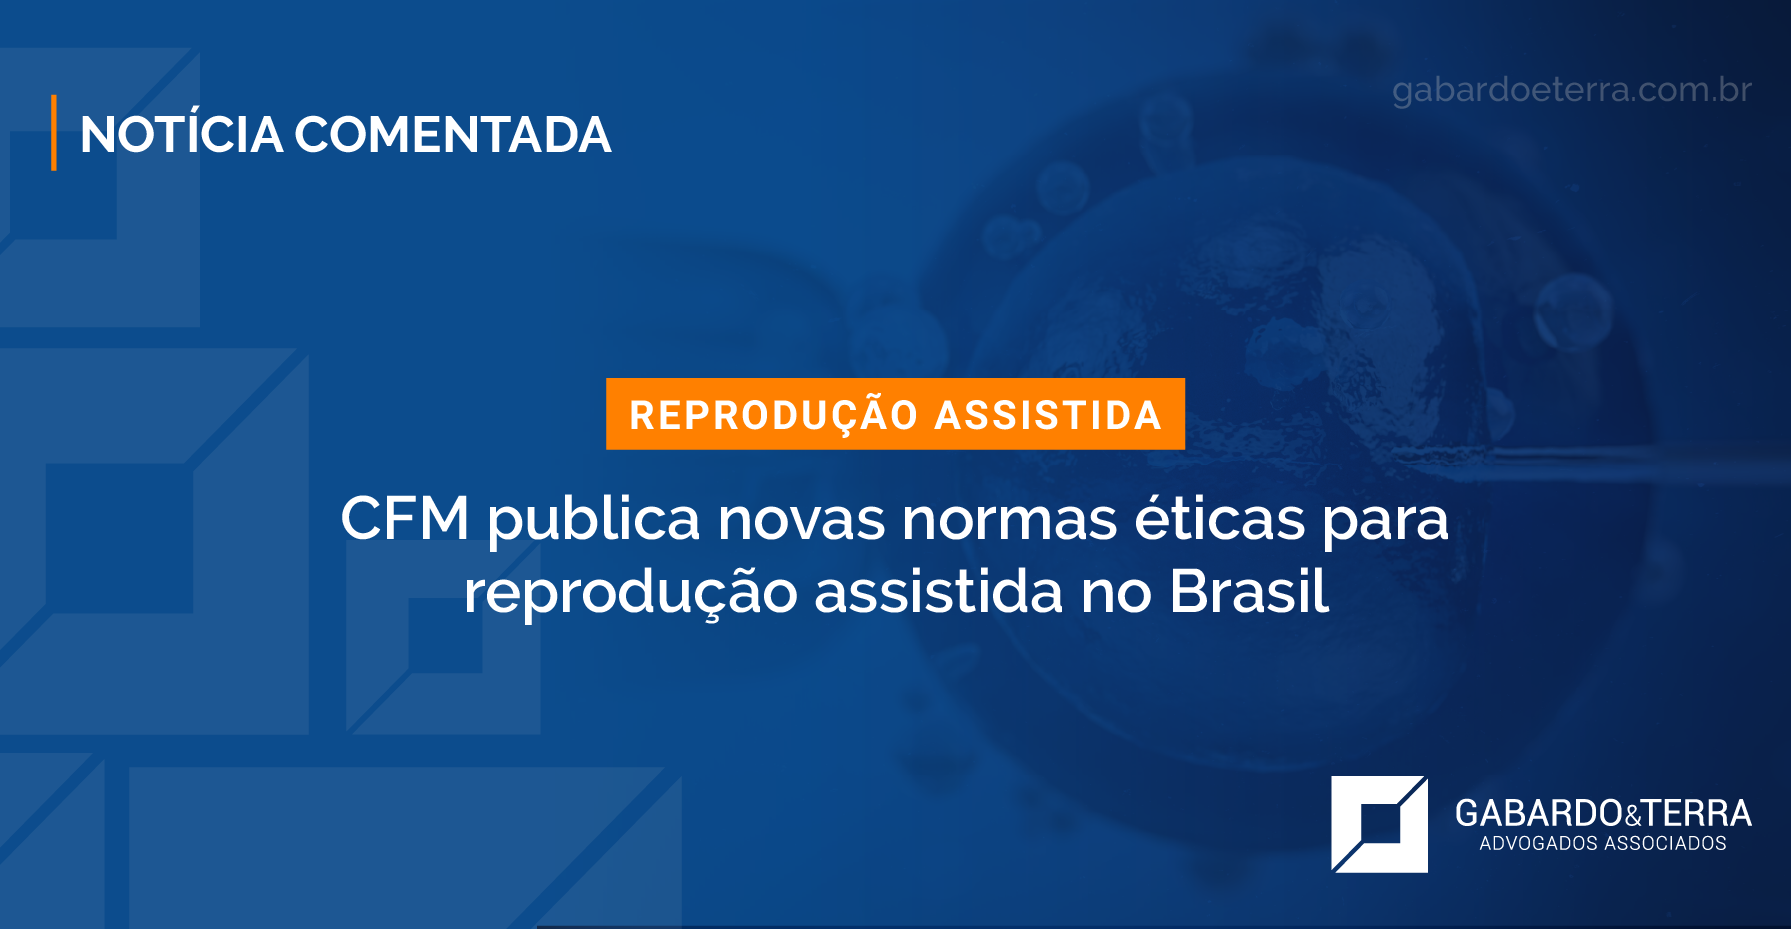 CFM publica novas normas éticas para reprodução assistida no Brasil